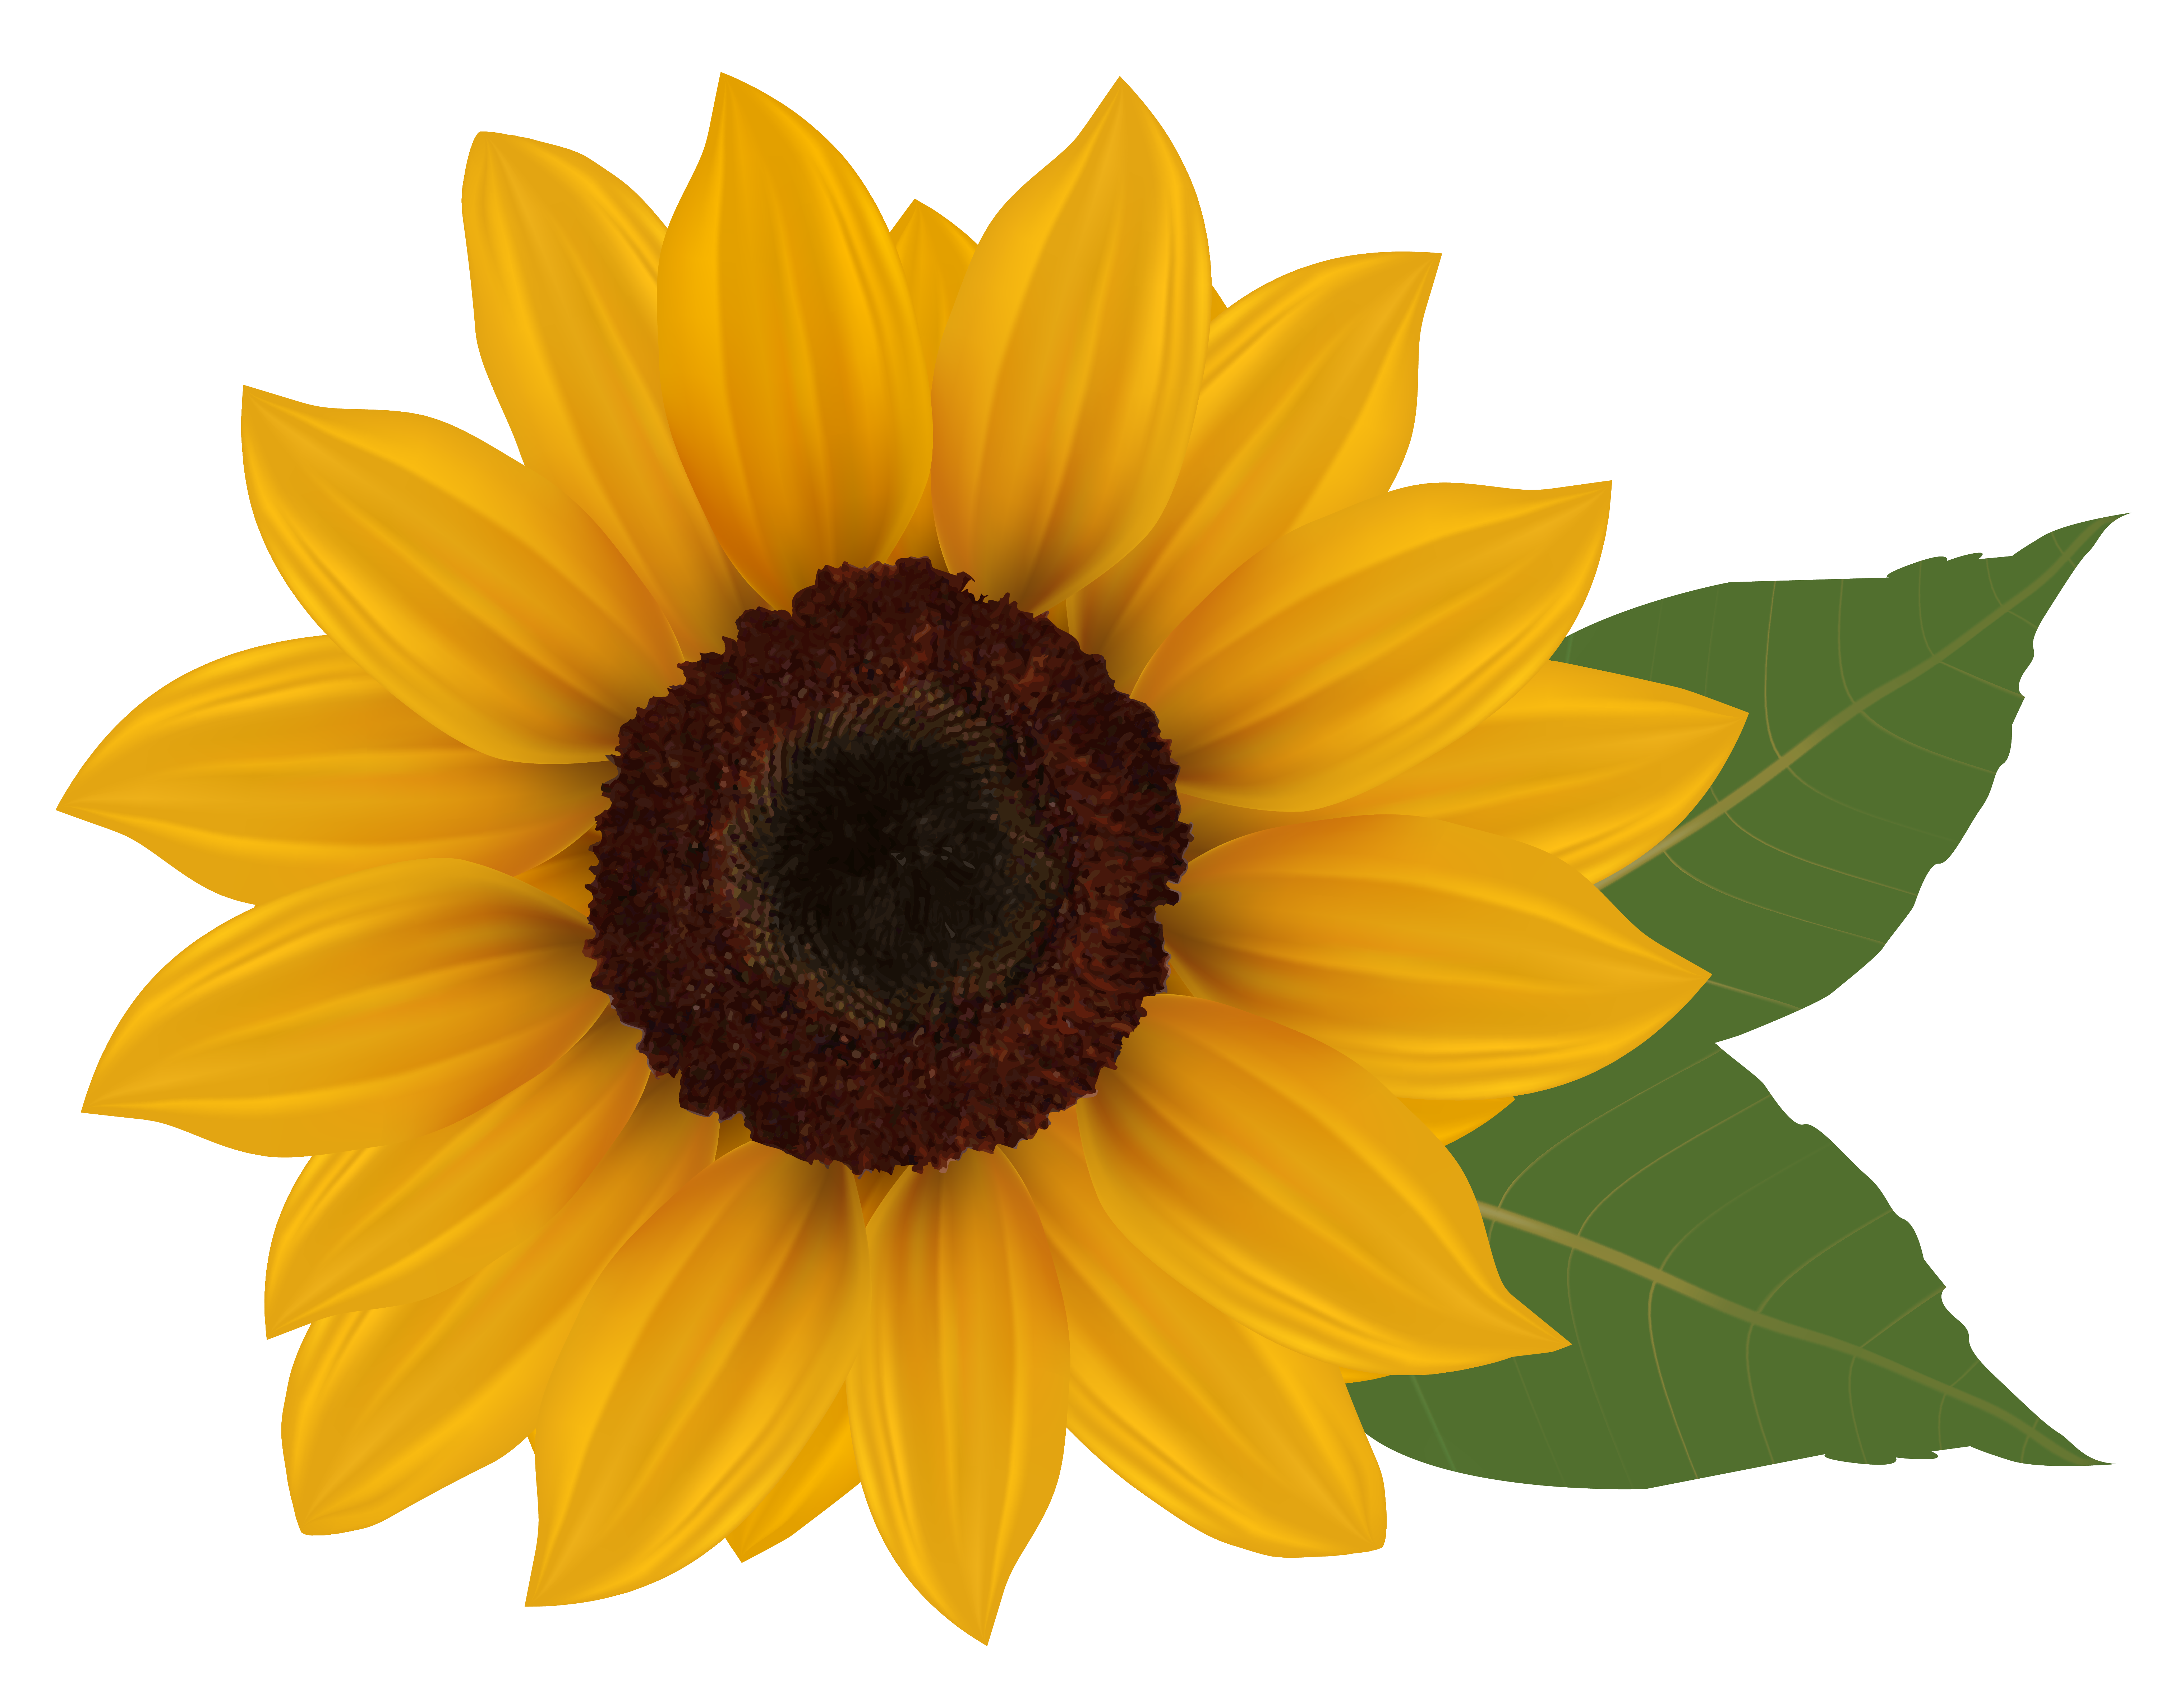 Clipart Sunflower u0026amp; Sunflower Clip Art Images - ClipartALL clipartall.com